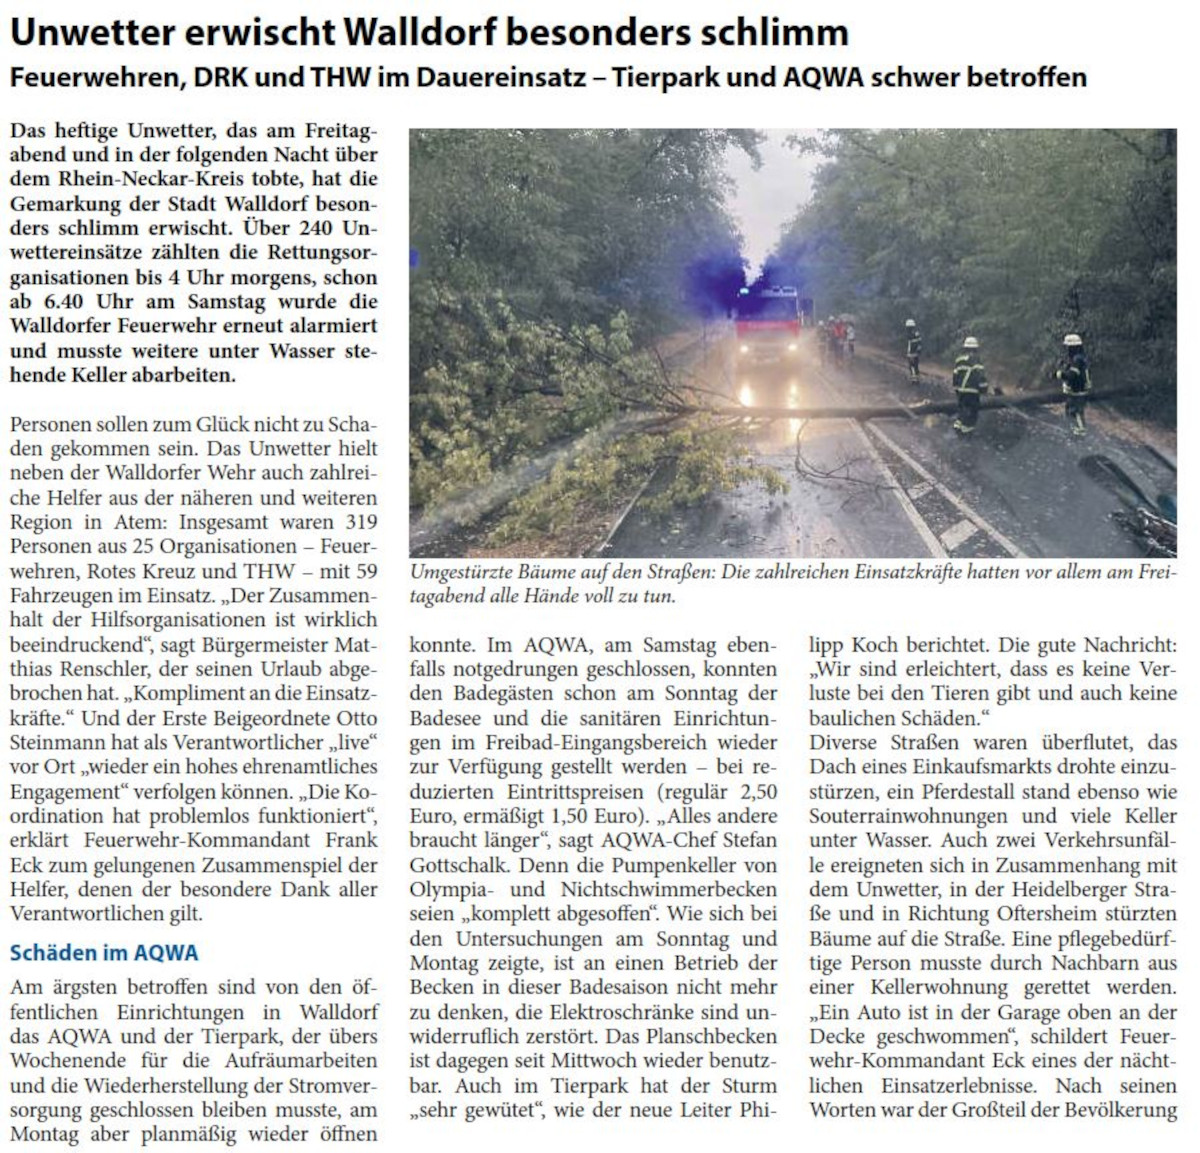 Bericht Ã¼ber das Unwetter und die schlimmen Auswirkungen auf Walldorf